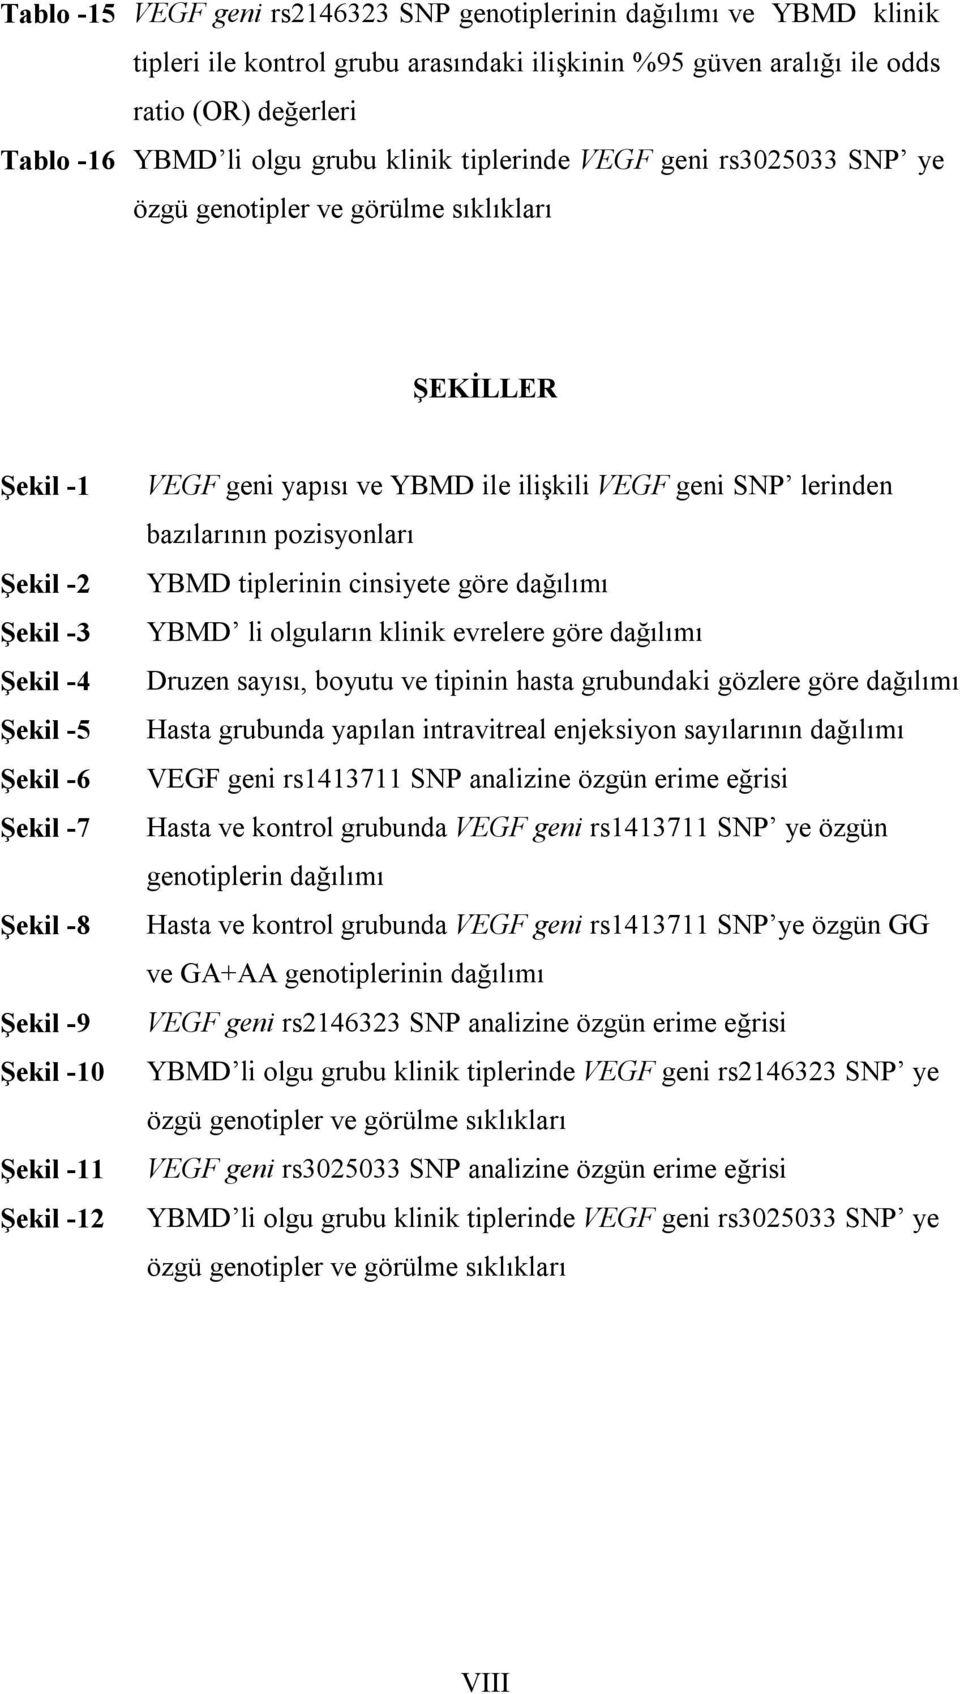 -12 VEGF geni yapısı ve YBMD ile ilişkili VEGF geni SNP lerinden bazılarının pozisyonları YBMD tiplerinin cinsiyete göre dağılımı YBMD li olguların klinik evrelere göre dağılımı Druzen sayısı, boyutu